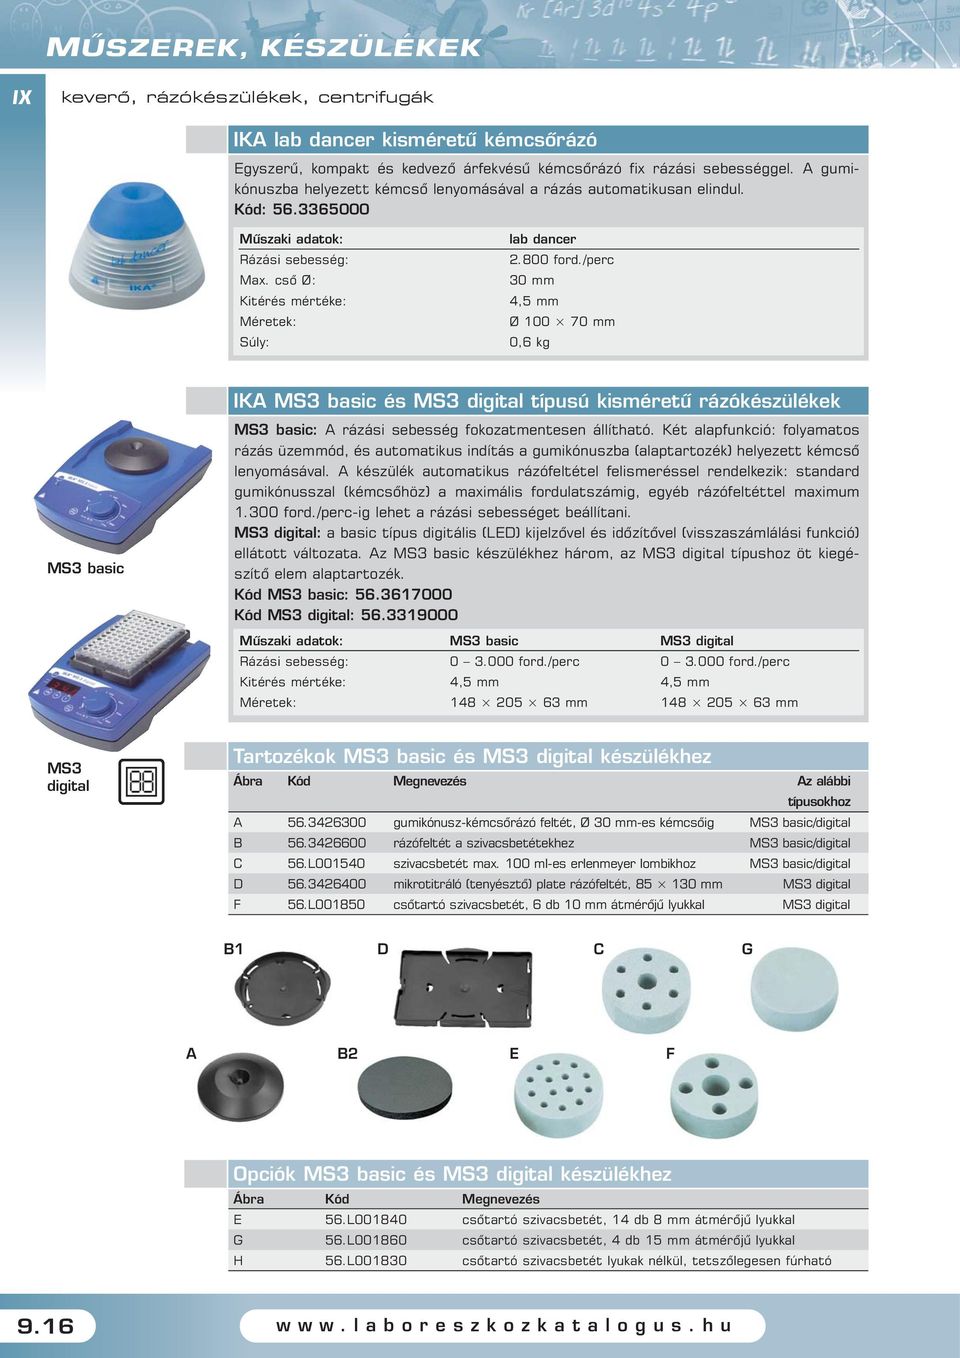 /perc 30 mm 4,5 mm Ø 100 70 mm 0,6 kg MS3 basic IKA MS3 basic és MS3 digital típusú kisméretû rázókészülékek MS3 basic: A rázási sebesség fokozatmentesen állítható.